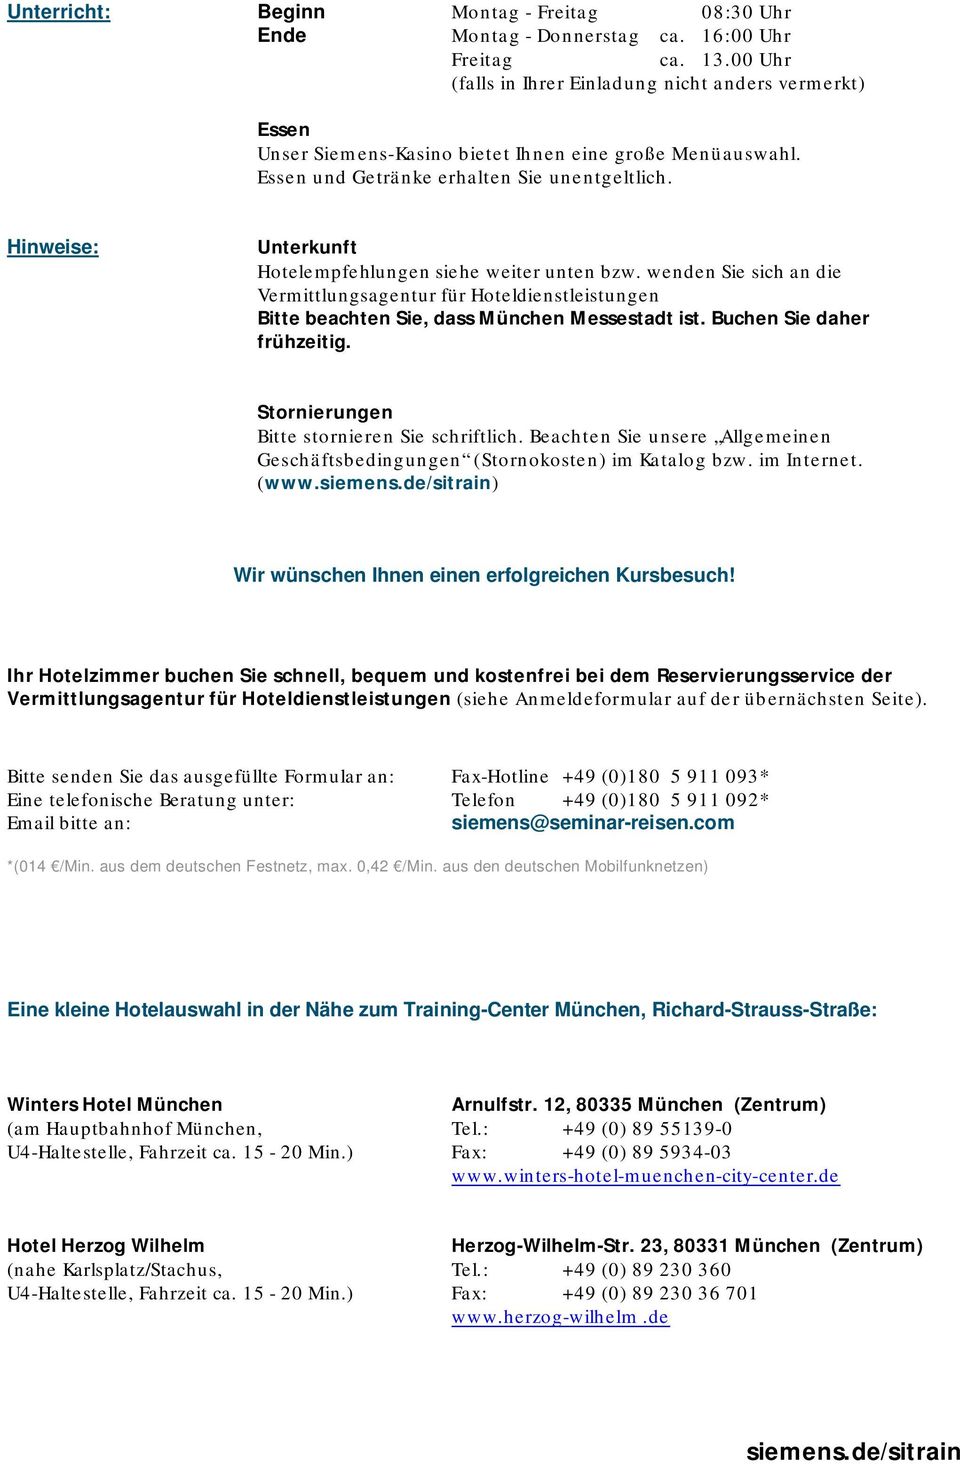 Hinweise: Unterkunft Hotelempfehlungen siehe weiter unten bzw. wenden Sie sich an die Vermittlungsagentur für Hoteldienstleistungen Bitte beachten Sie, dass München Messestadt ist.